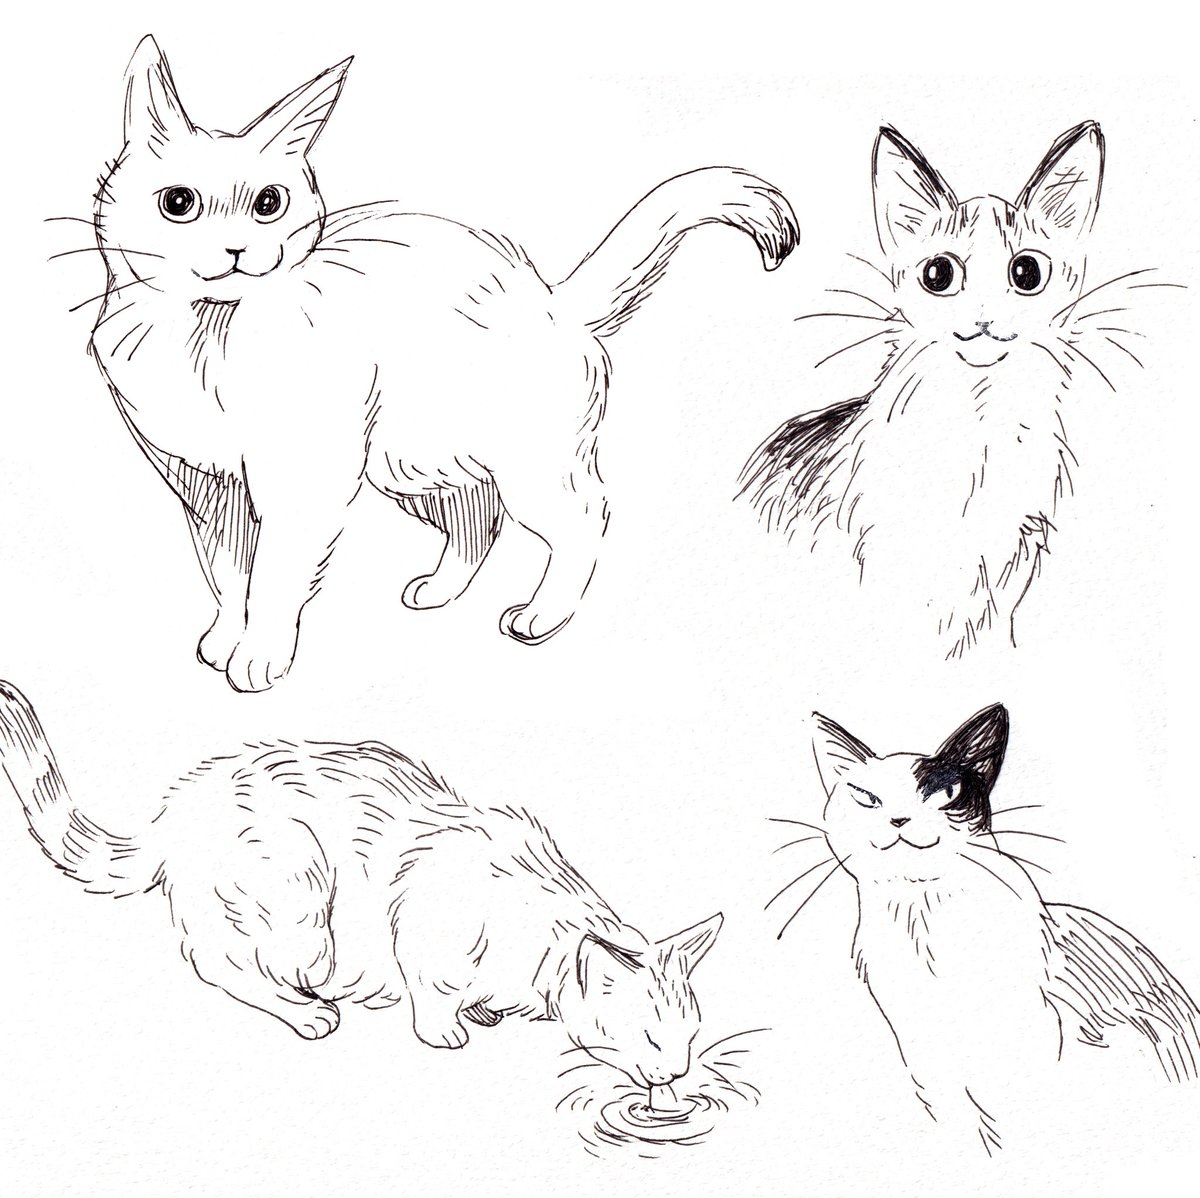 cat sketches in b&w ✍️ 